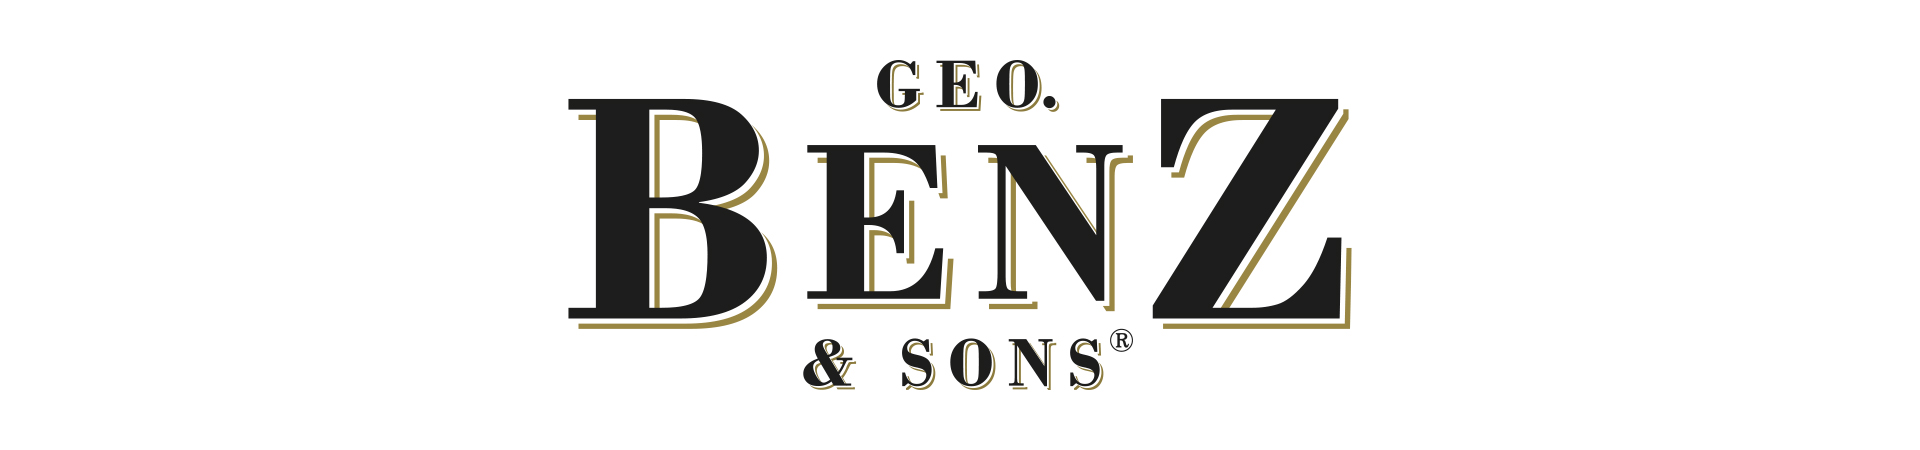 Geo Benz & Sons